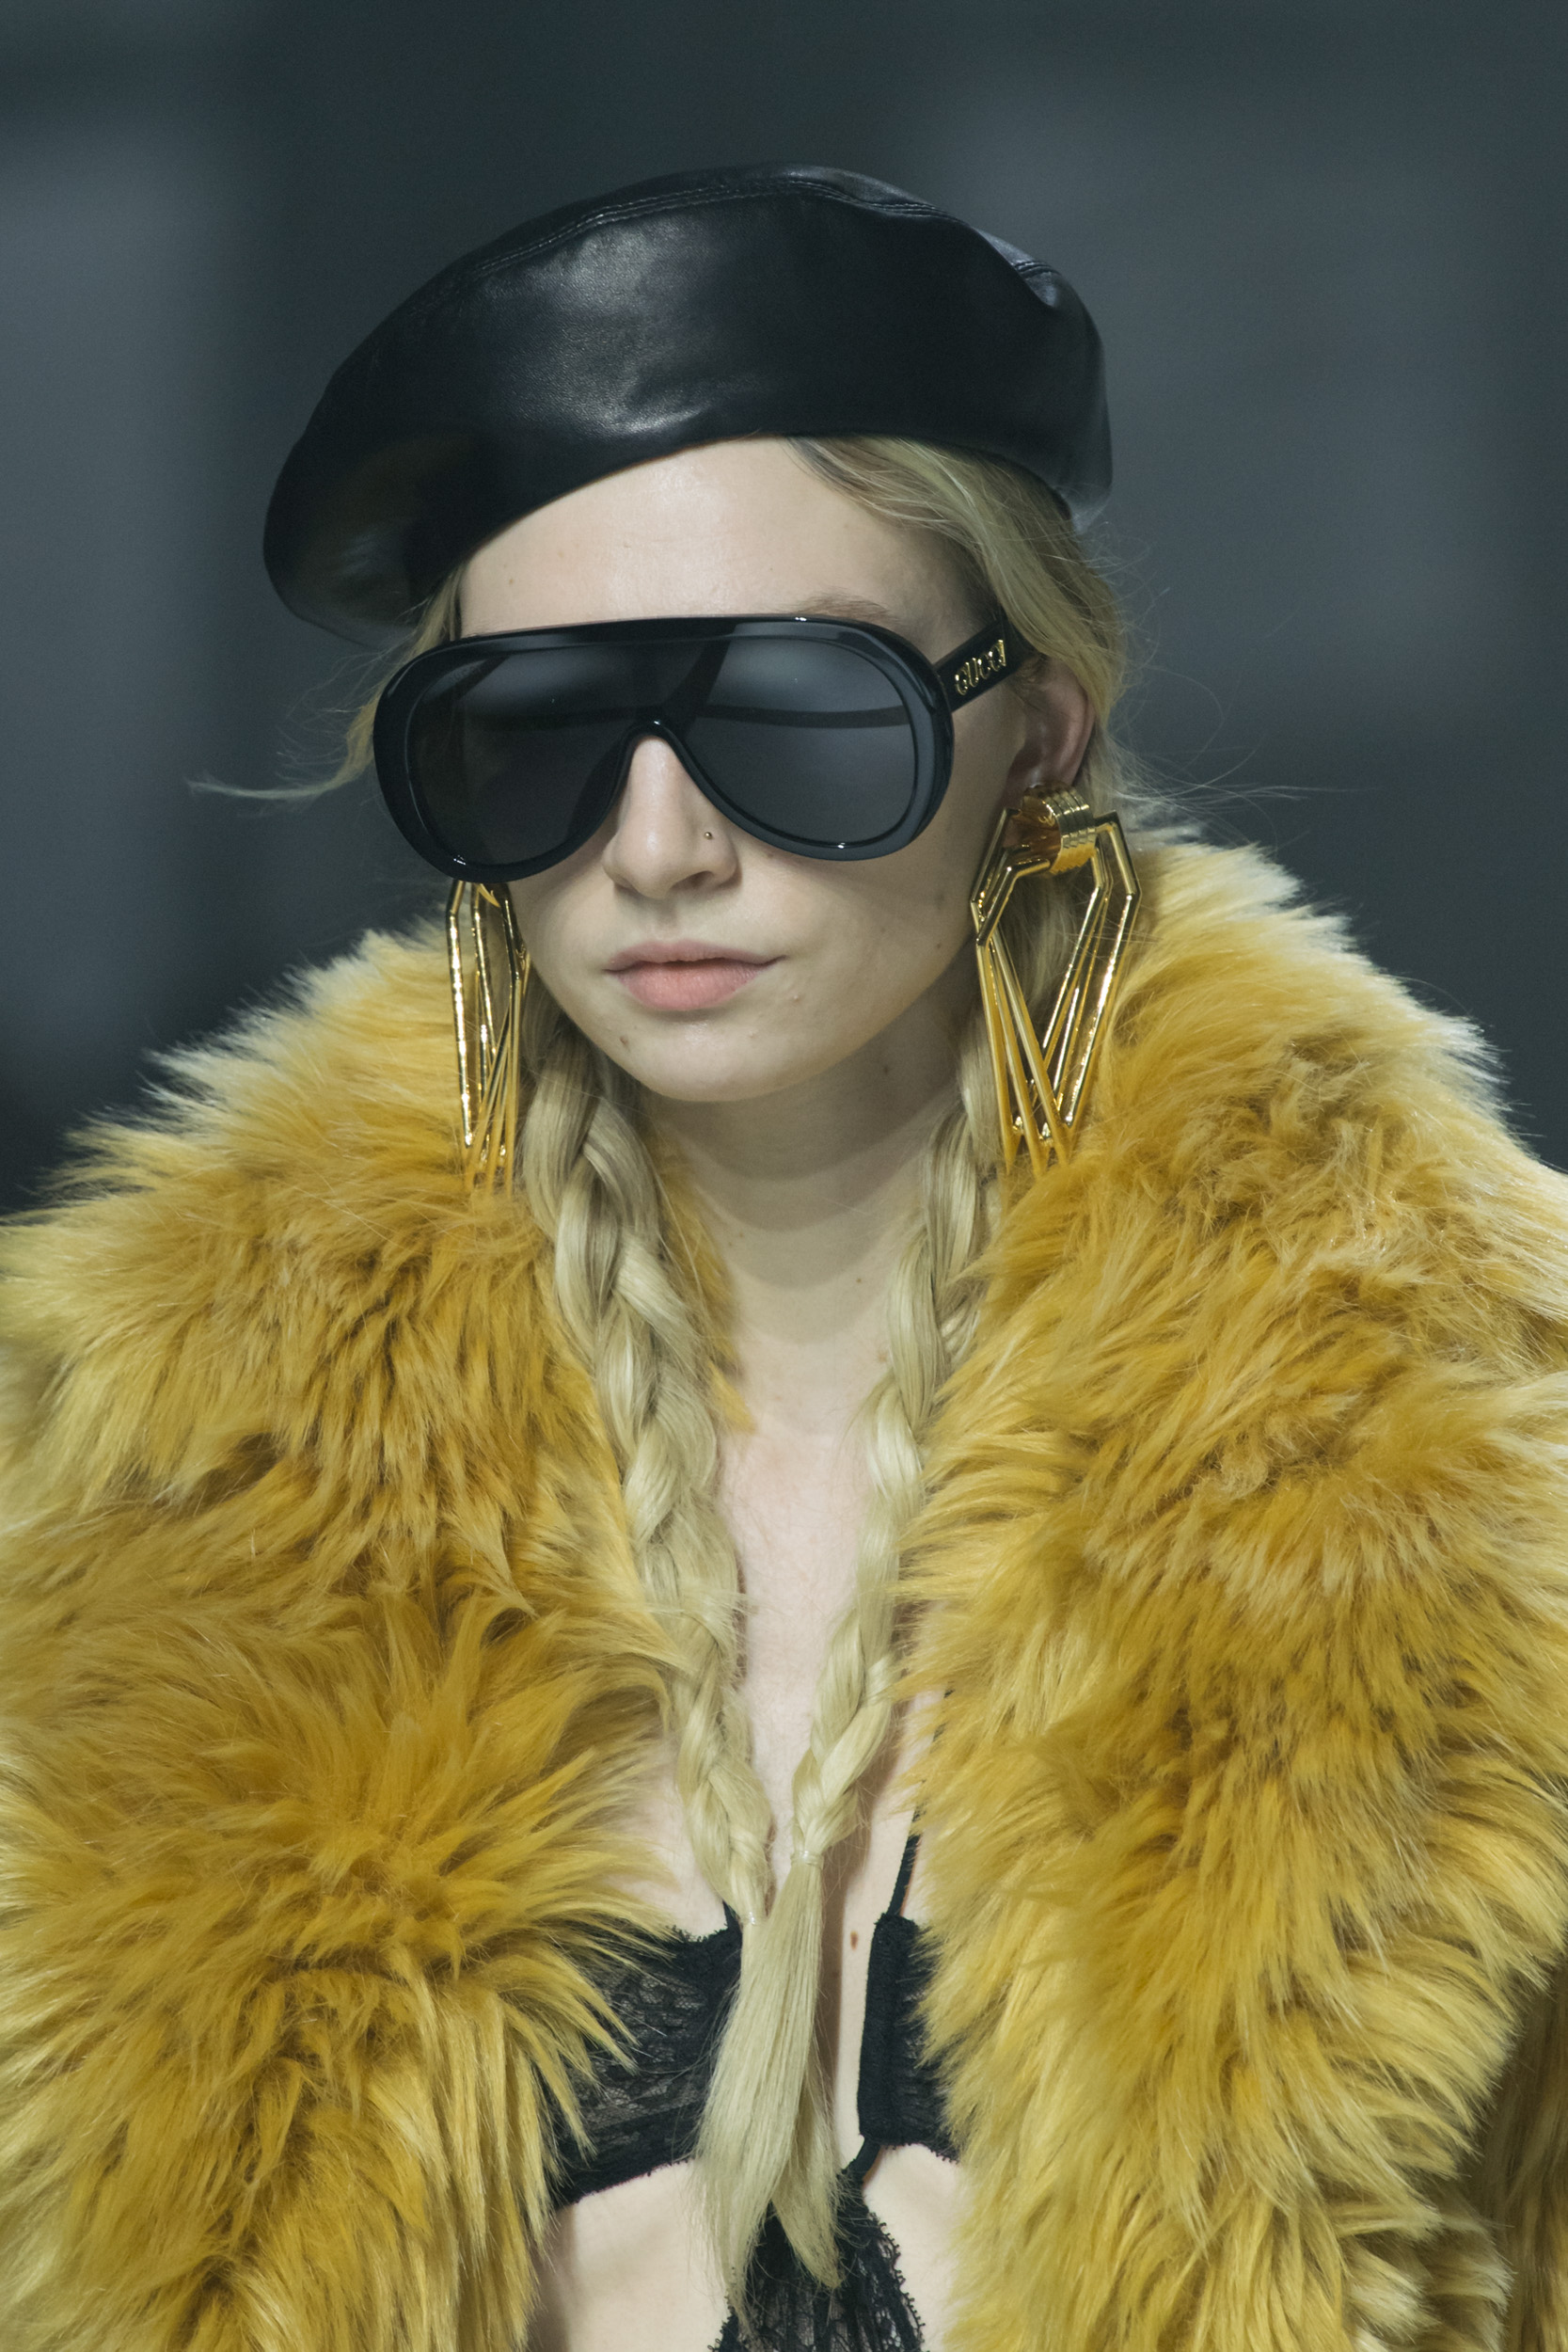 Gucci Fall 2022 Fashion Show Details Fashion Show